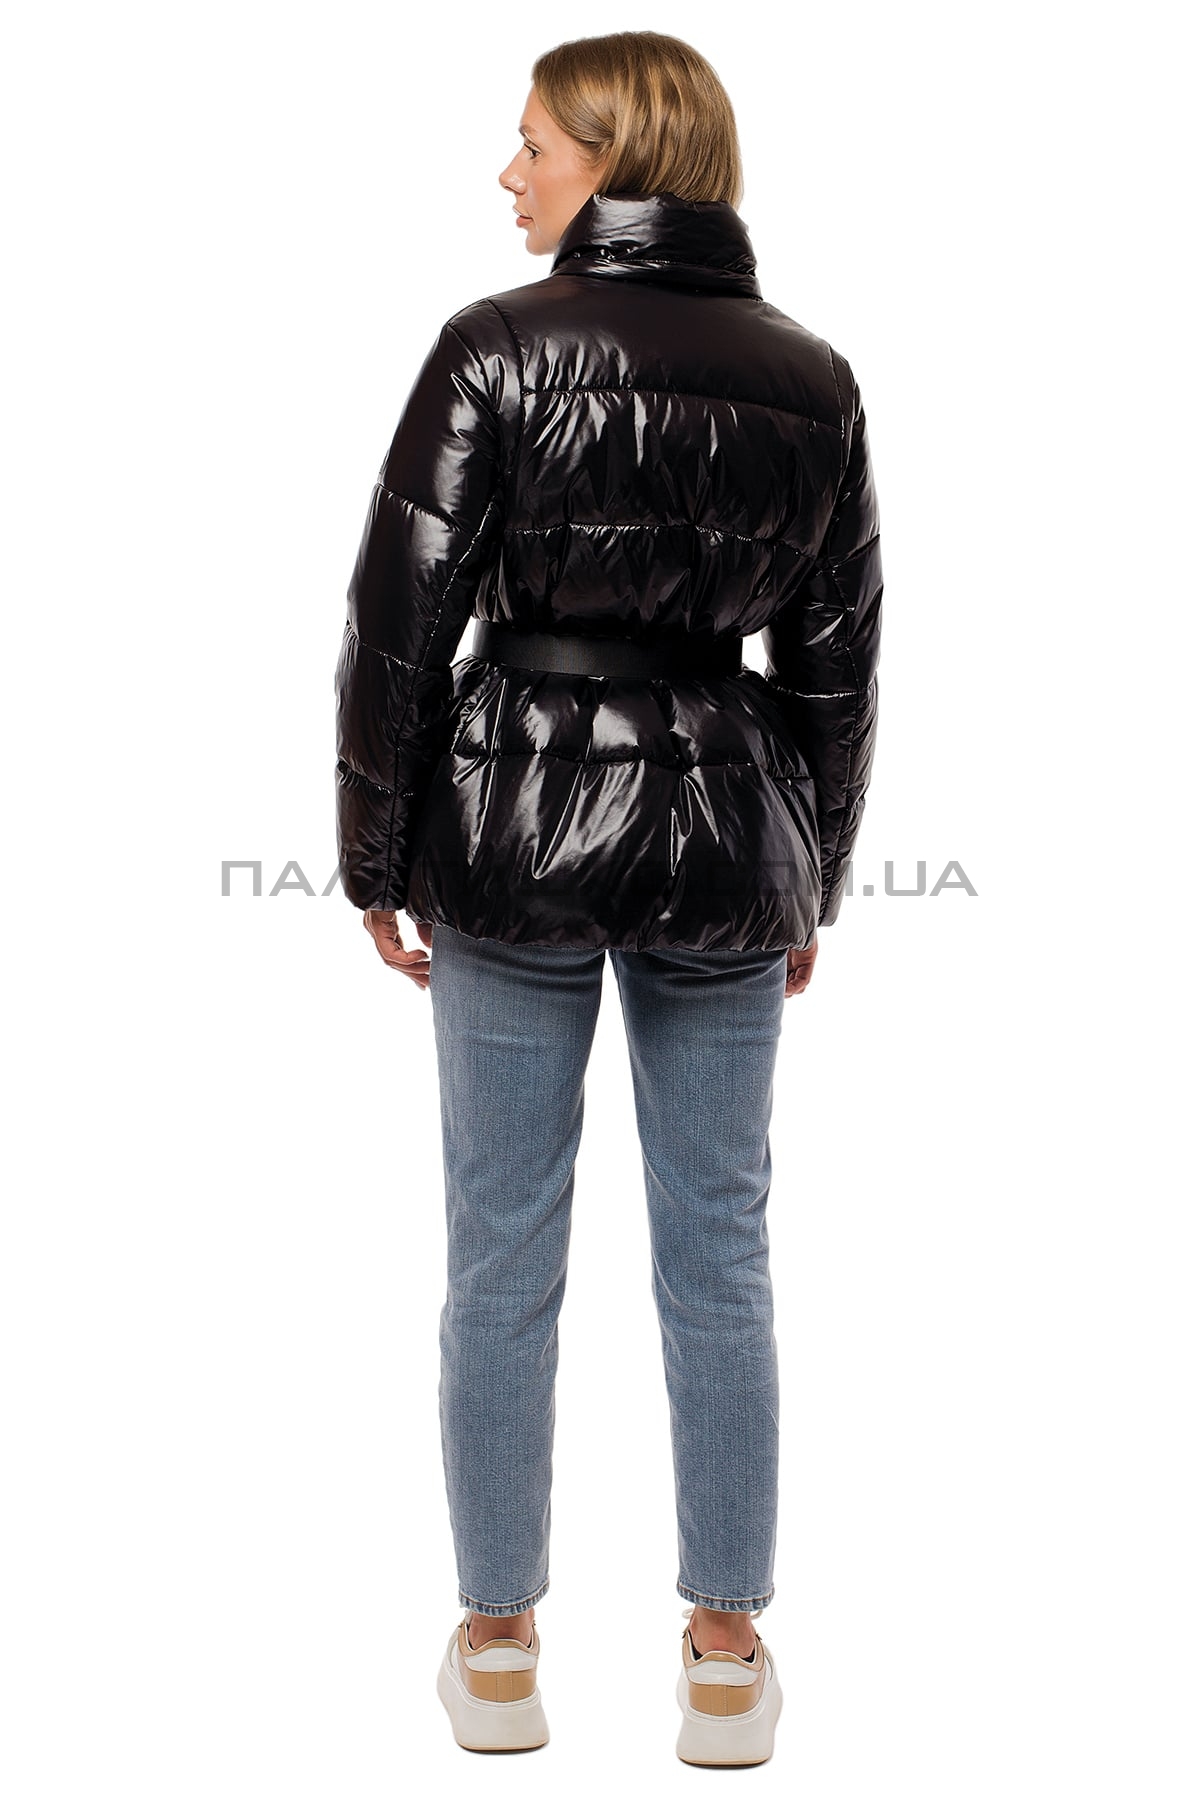  Жіноча зимова куртка чорна з поясом